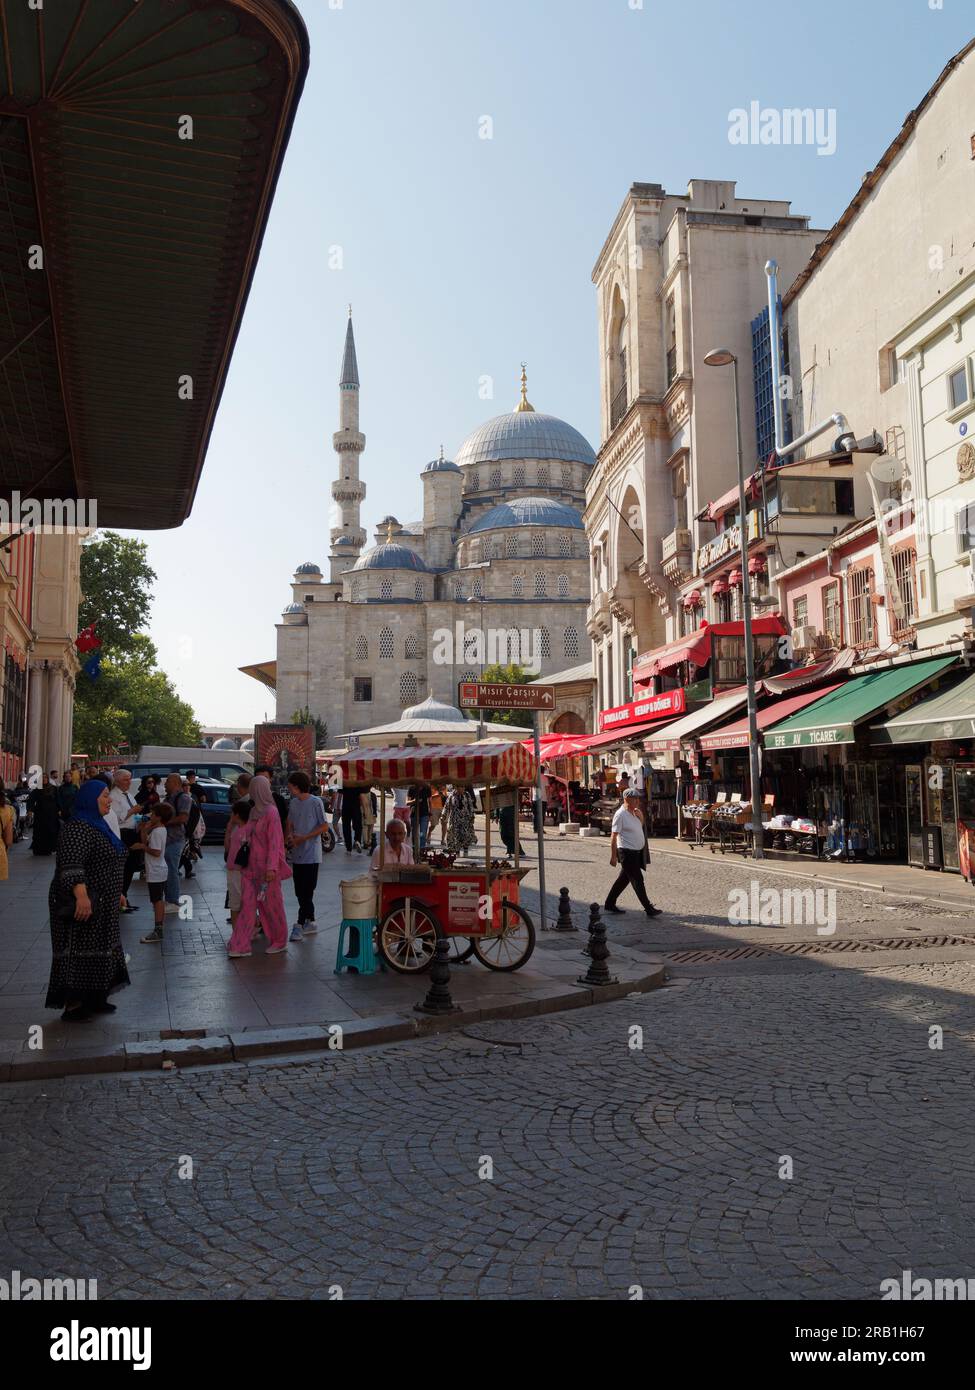 Yeni Cami ou Nouvelle Mosquée avec une rue pleine de magasins, de gens et un chariot distributeur rouge, Istanbul, Turquie Banque D'Images